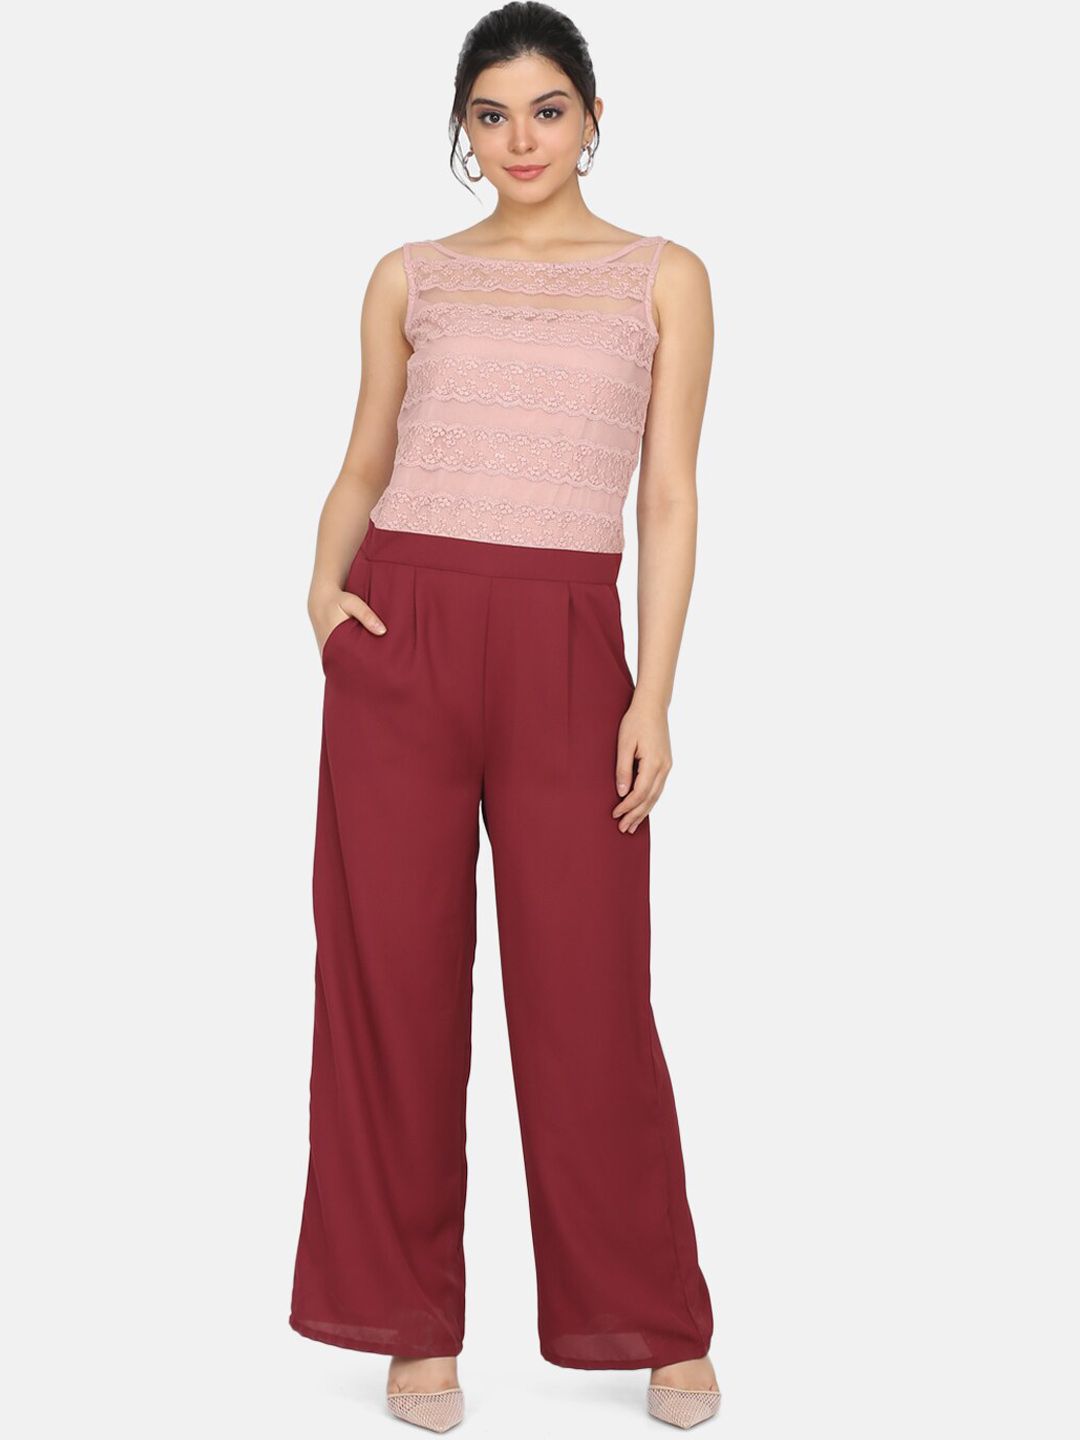 Eavan Women Pink & Maroon Colourblocked Basic Jumpsuit Price in India